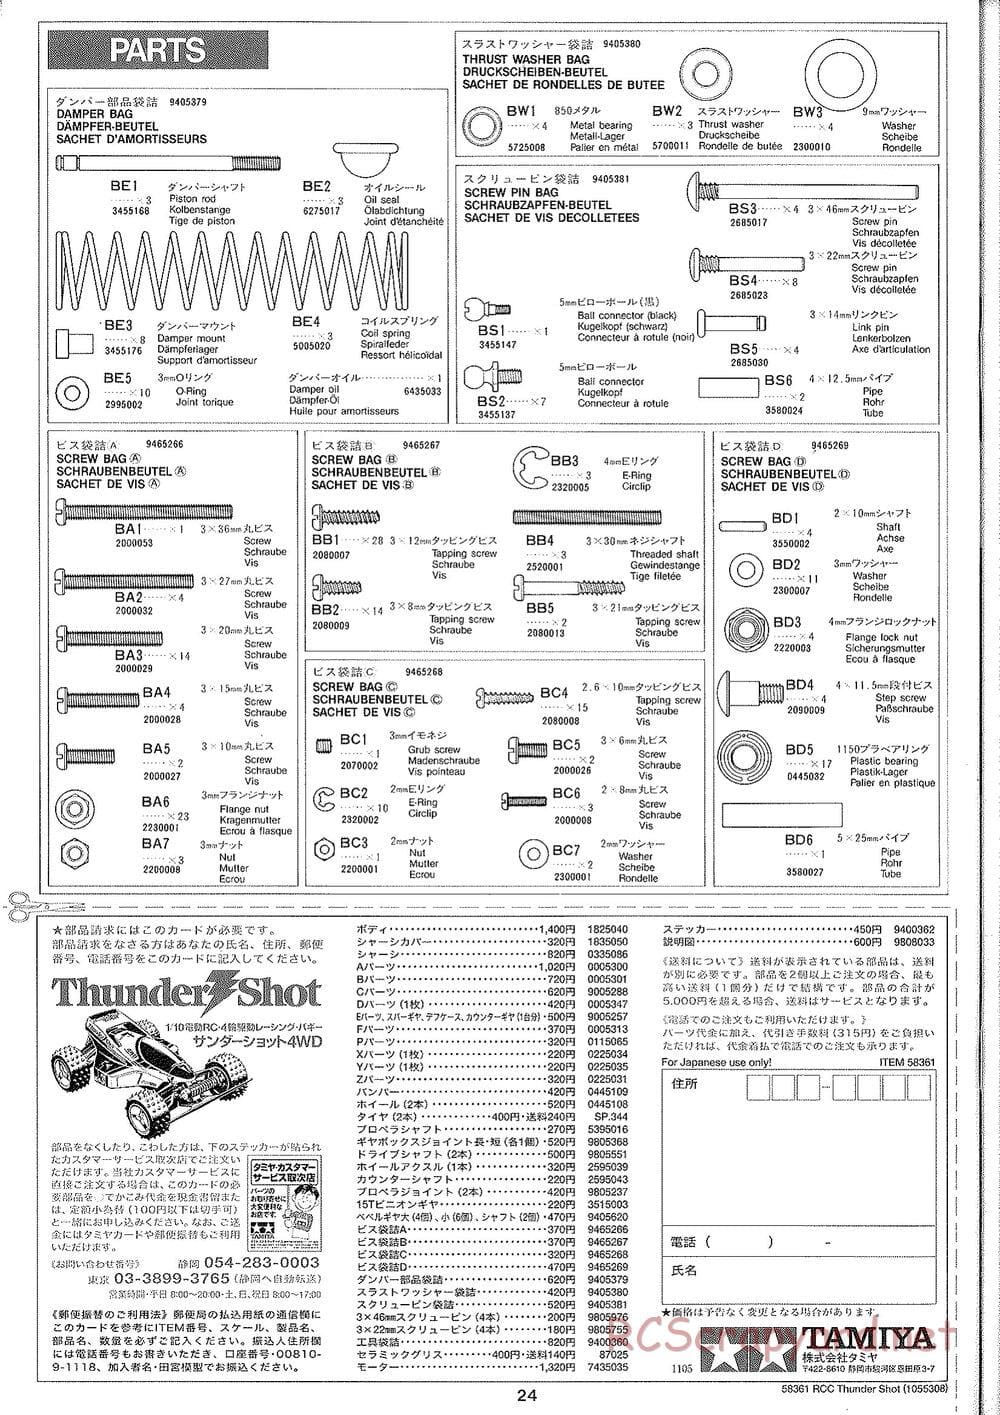 Tamiya - Thunder Shot - TS1 Chassis - Manual - Page 25